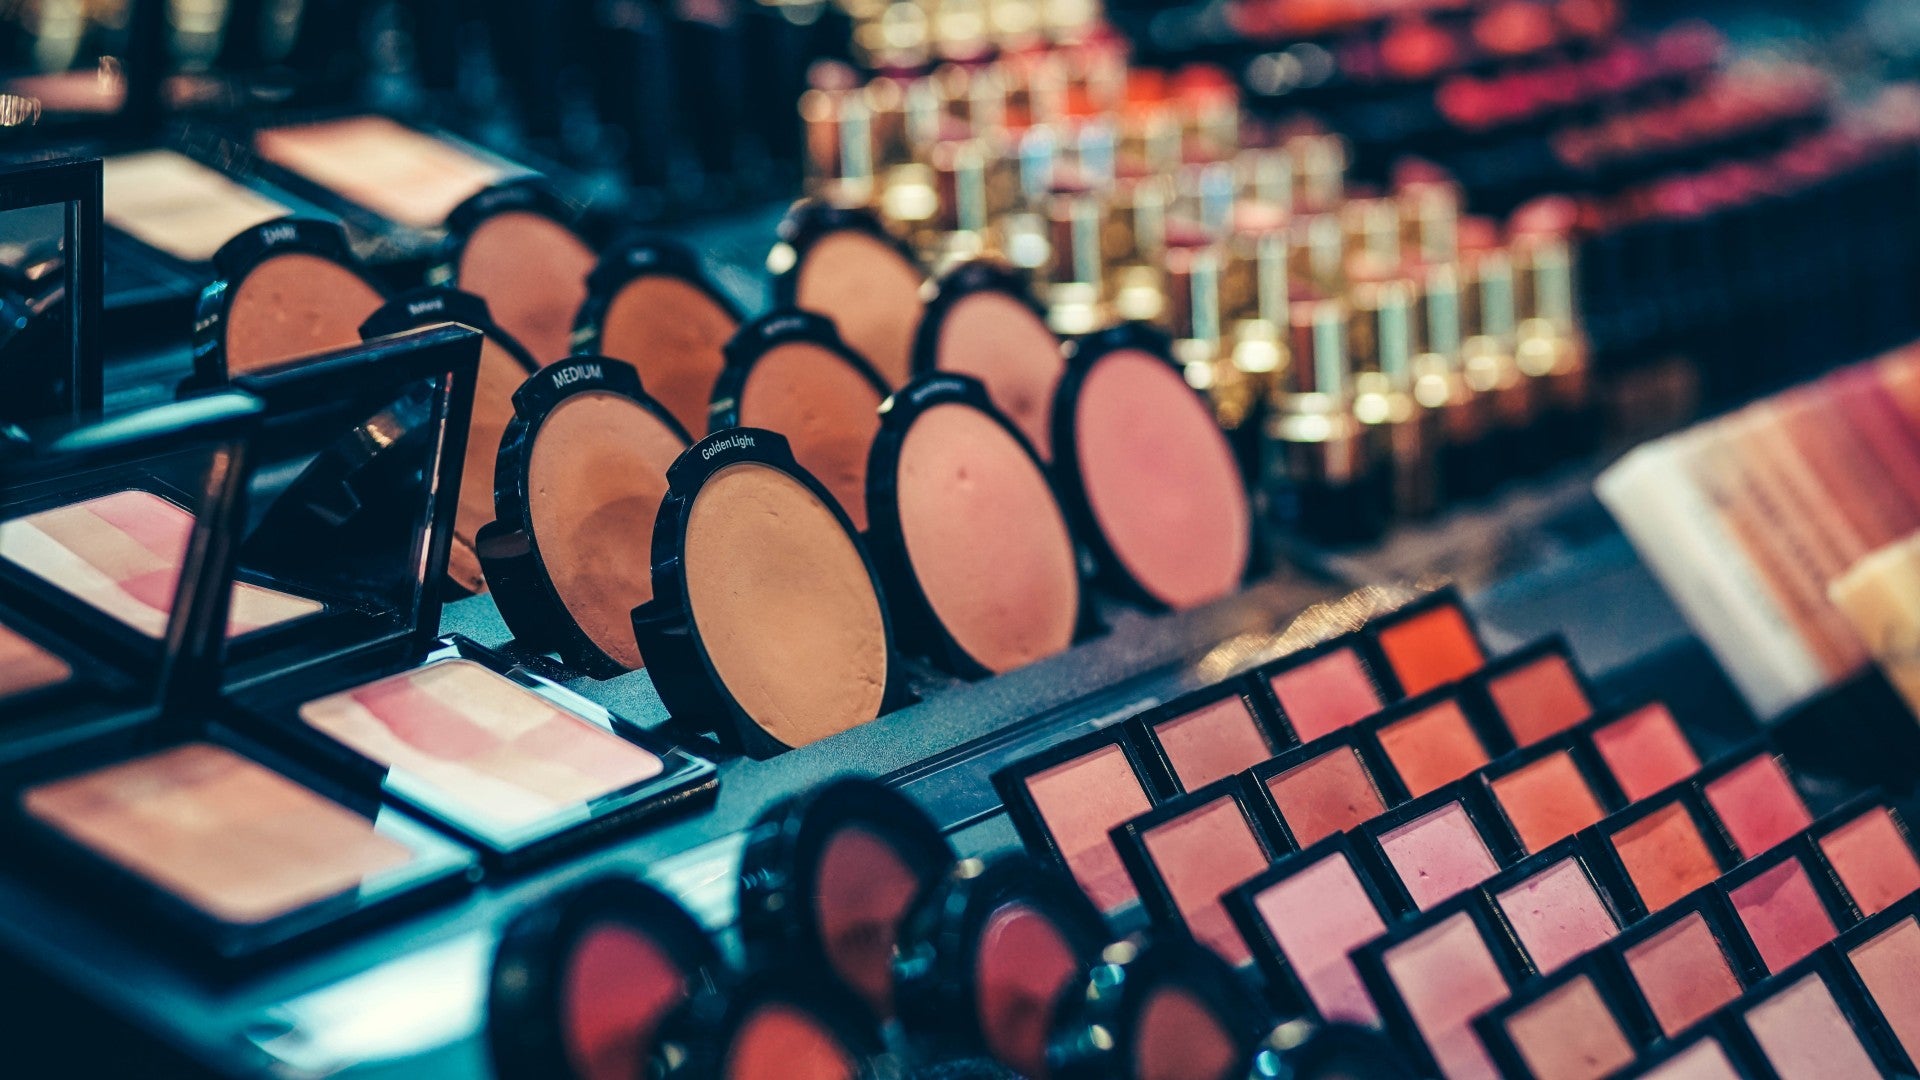 9 Best Makeup Organizers For Decluttering Your Vanity